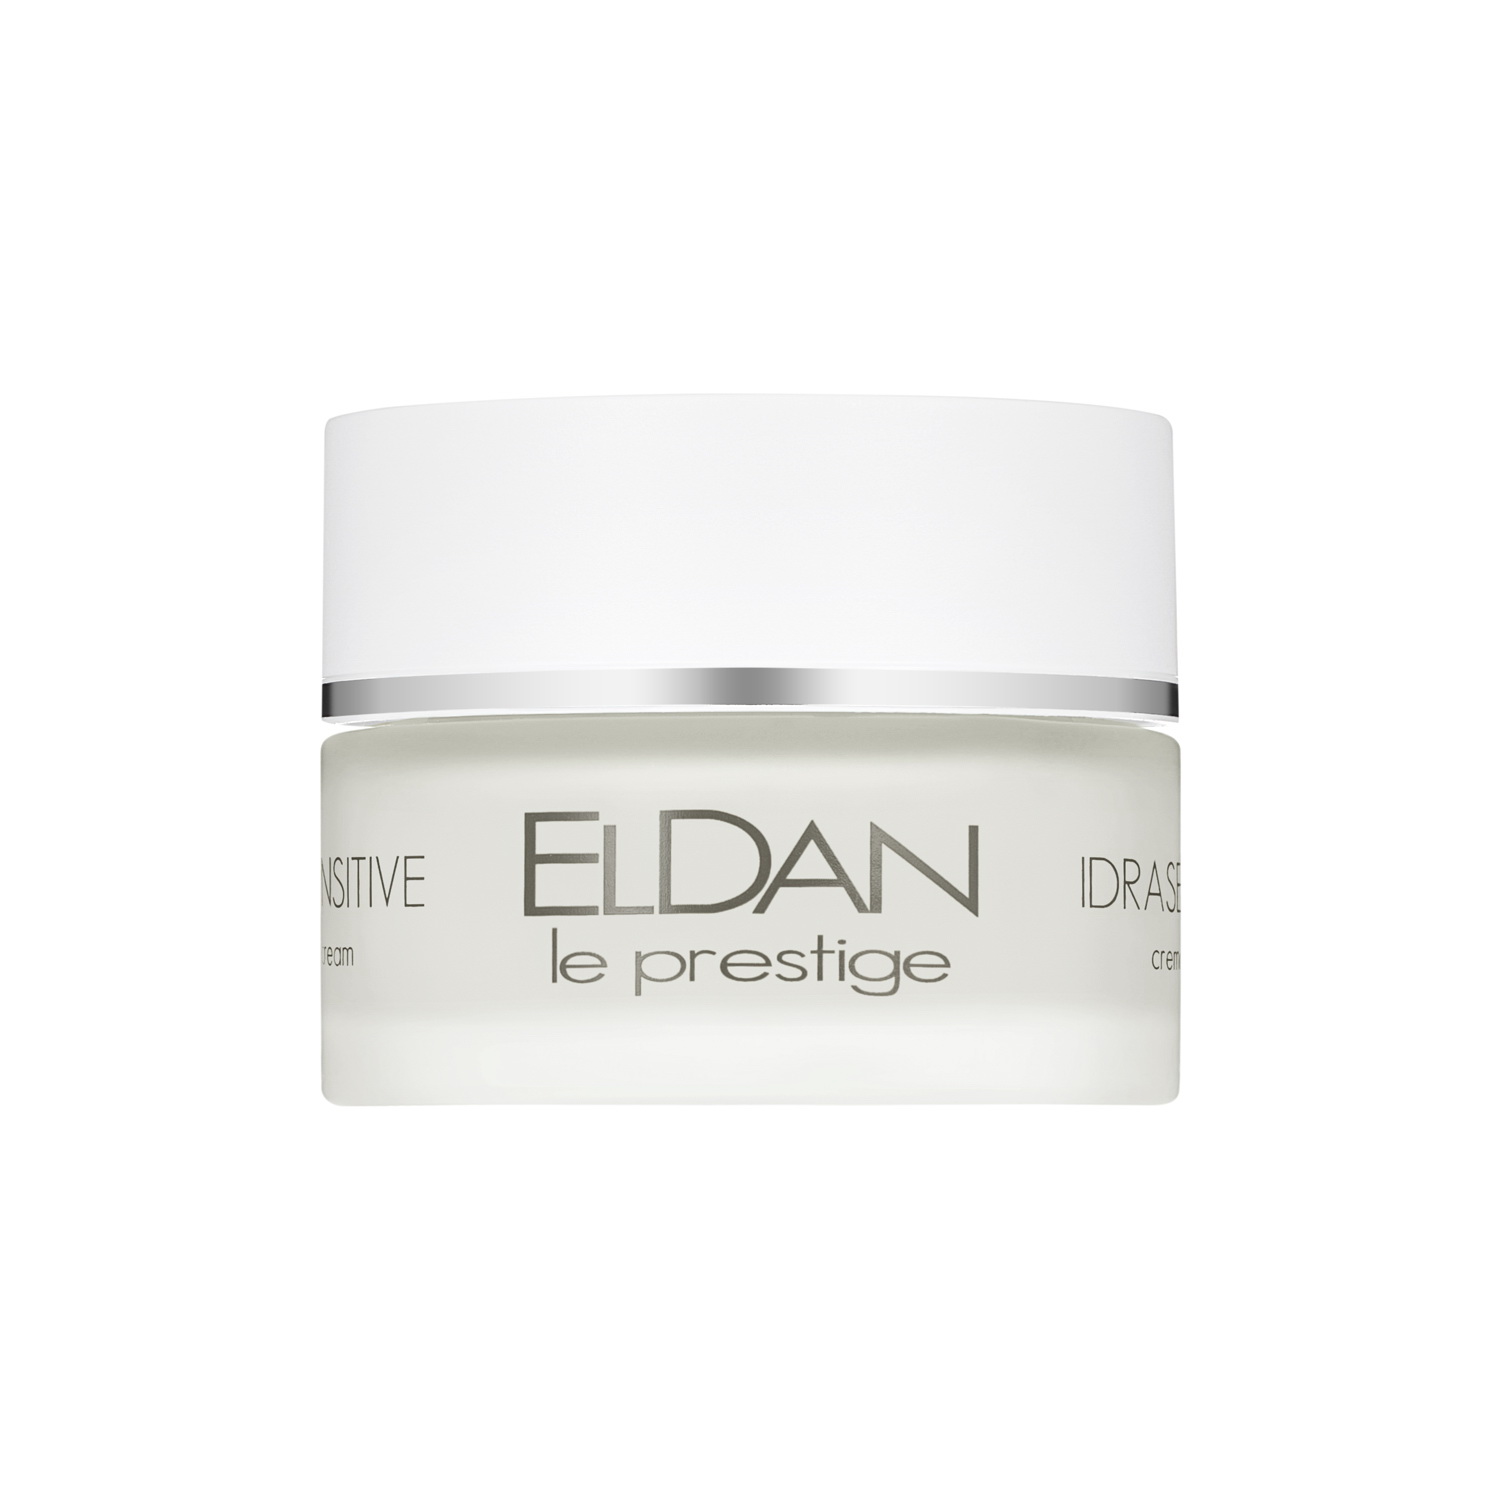 Крем для лица ELDAN Cosmetics Idrasensitive 24H Cream для чувствительной кожи, 50 мл eldan крем очищающий для проблемной кожи le prestige 50 мл